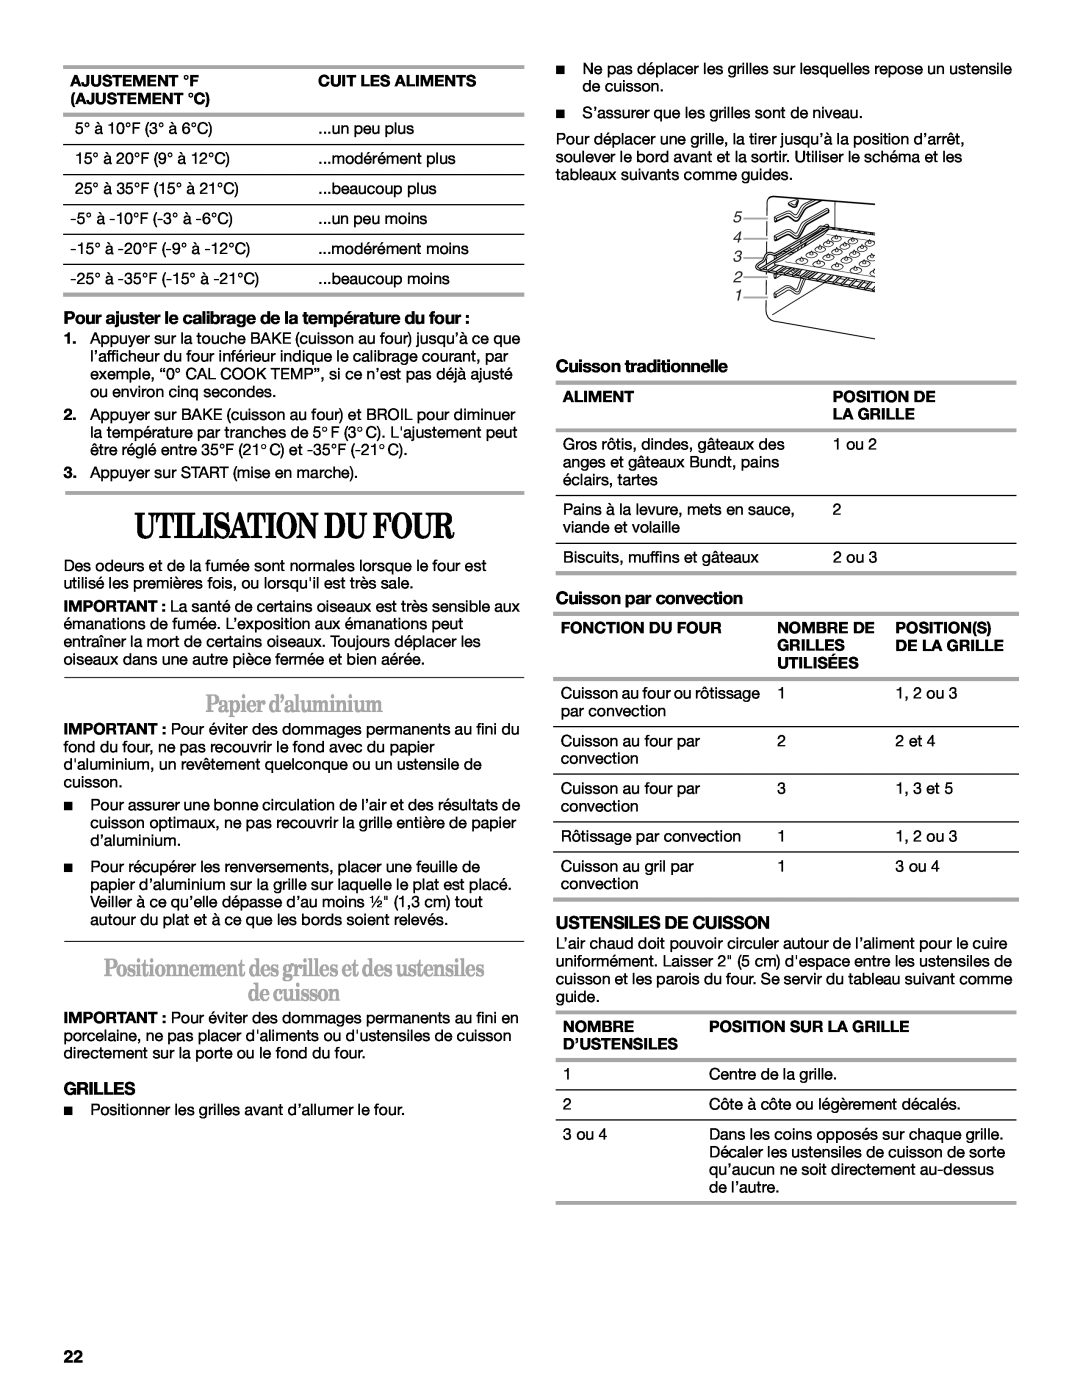 Whirlpool GSC309 manual Utilisation Du Four, Papierd’aluminium, Positionnementdesgrilles etdesustensiles decuisson, Grilles 